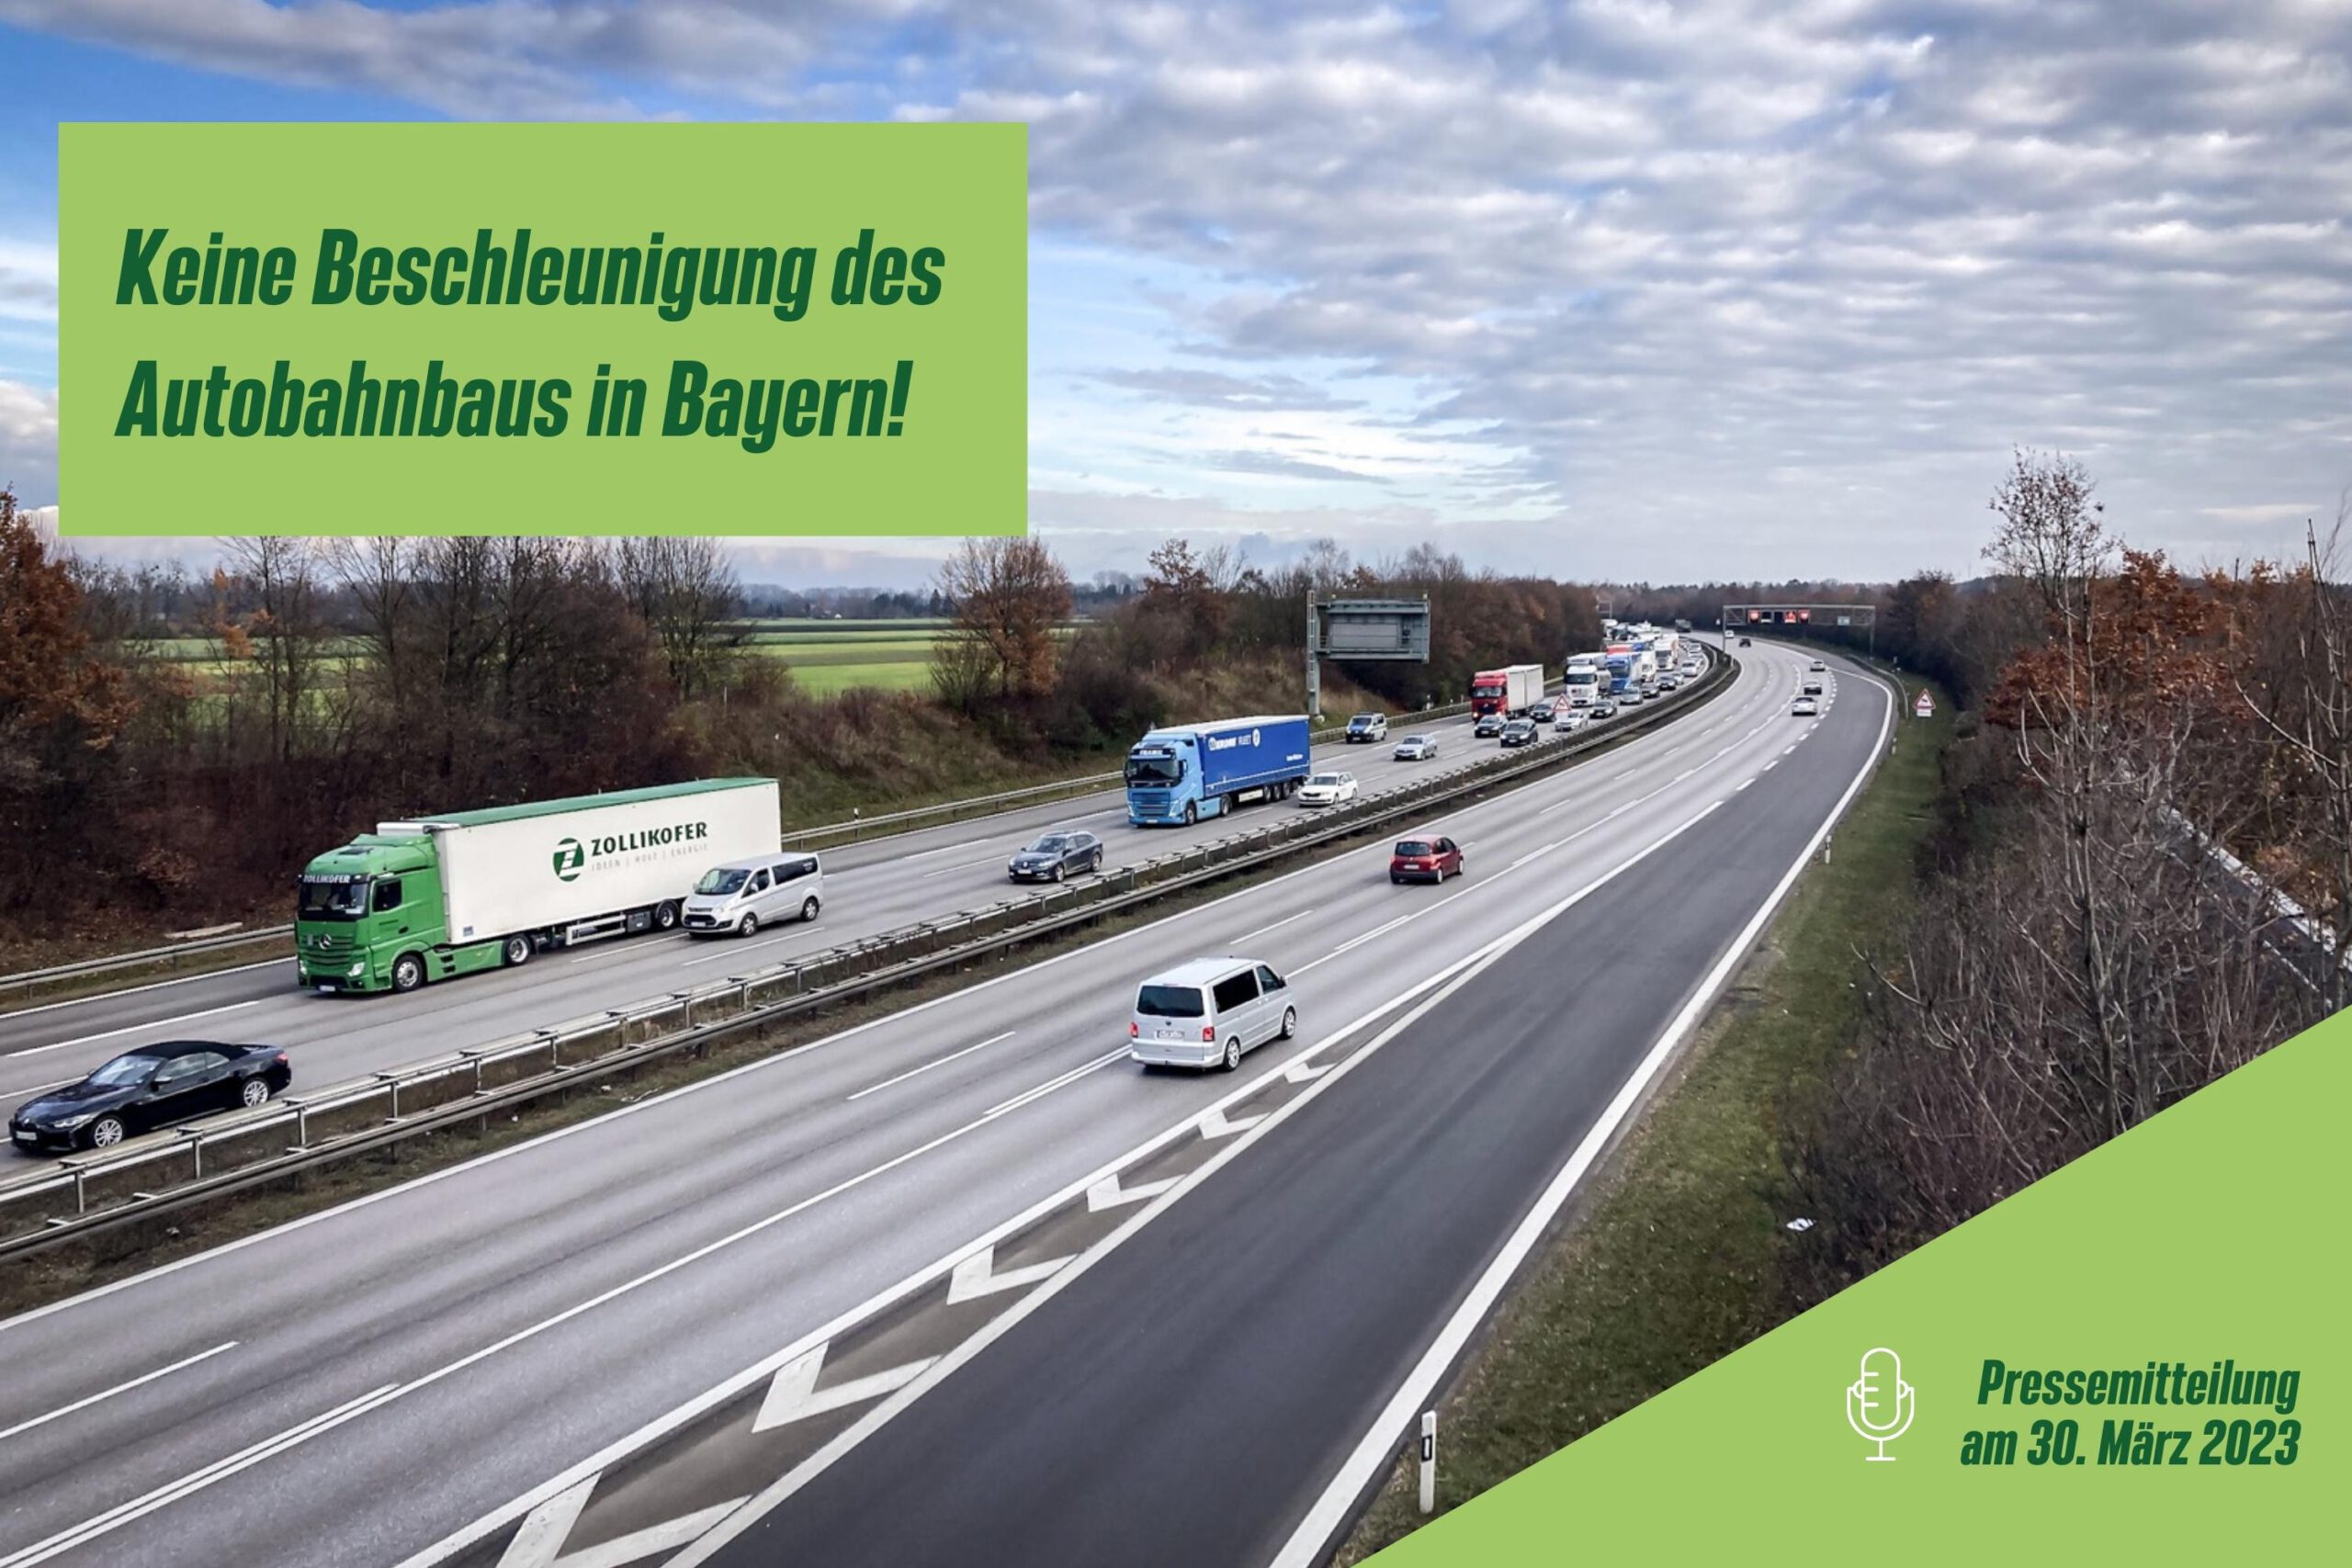 Bundesautobahn mit viel KfZ-Verkehr in Bayern. Davor Text auf grünem Grund: "Keine Beschleunigung des Autobahnbaus in Bayern"